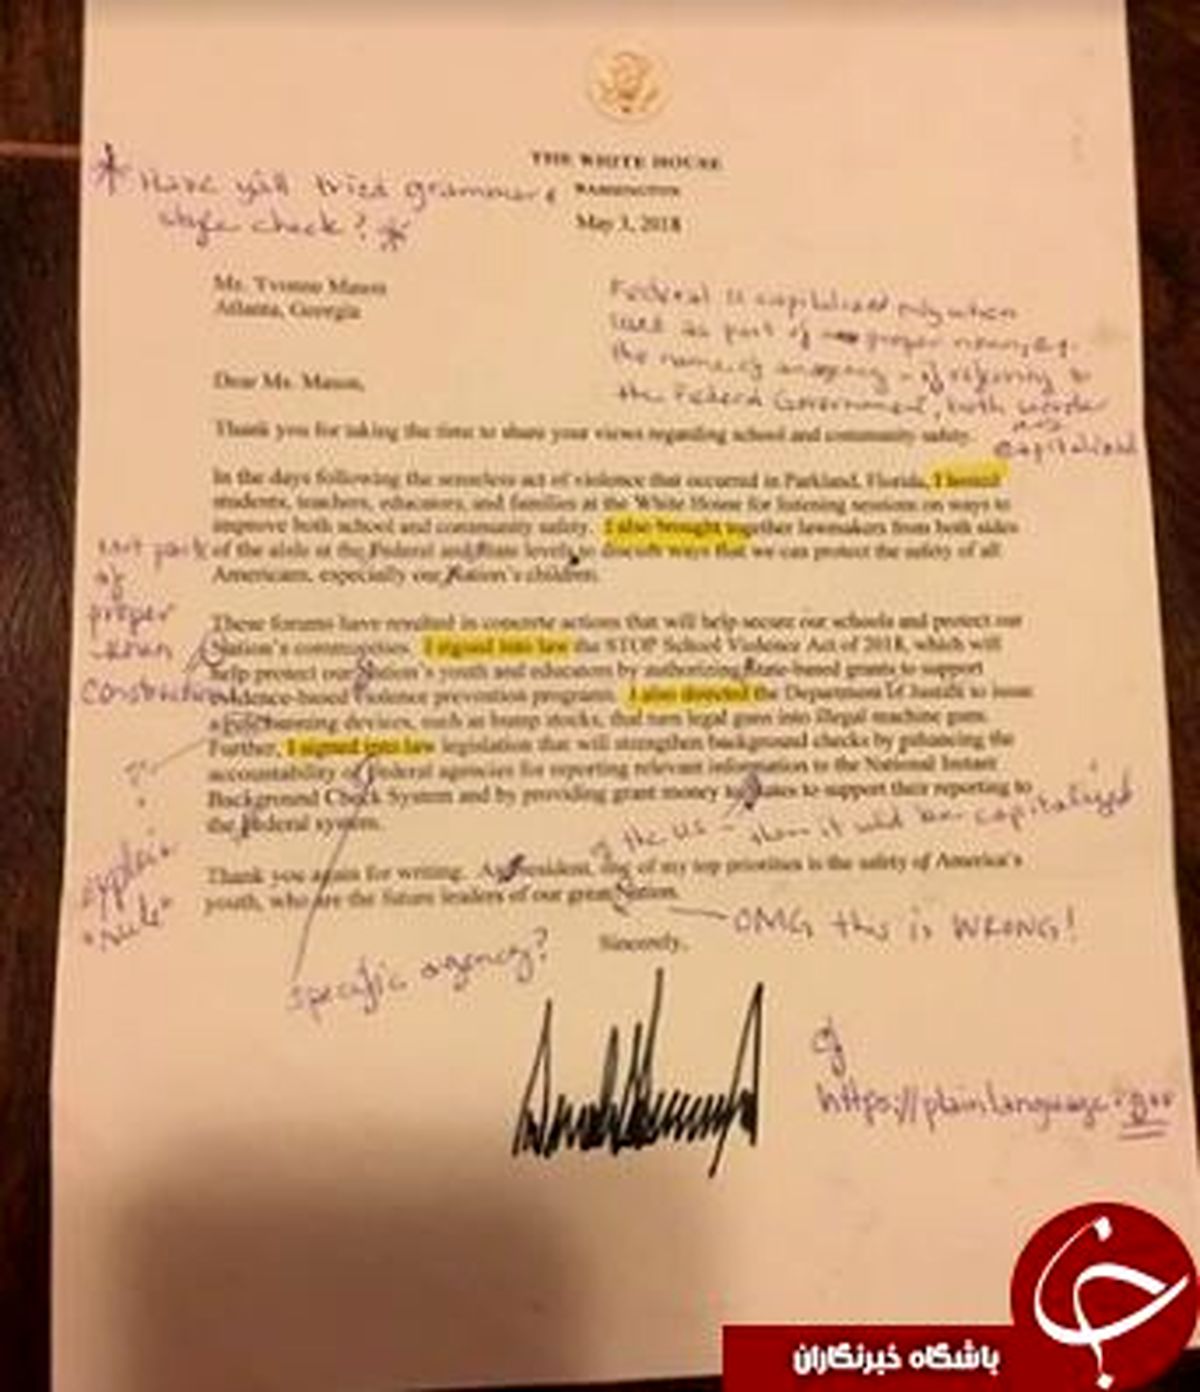 اصلاح نامه پر از غلط دونالد ترامپ بوسیله یک معلم زبان انگلیسی+ عکس